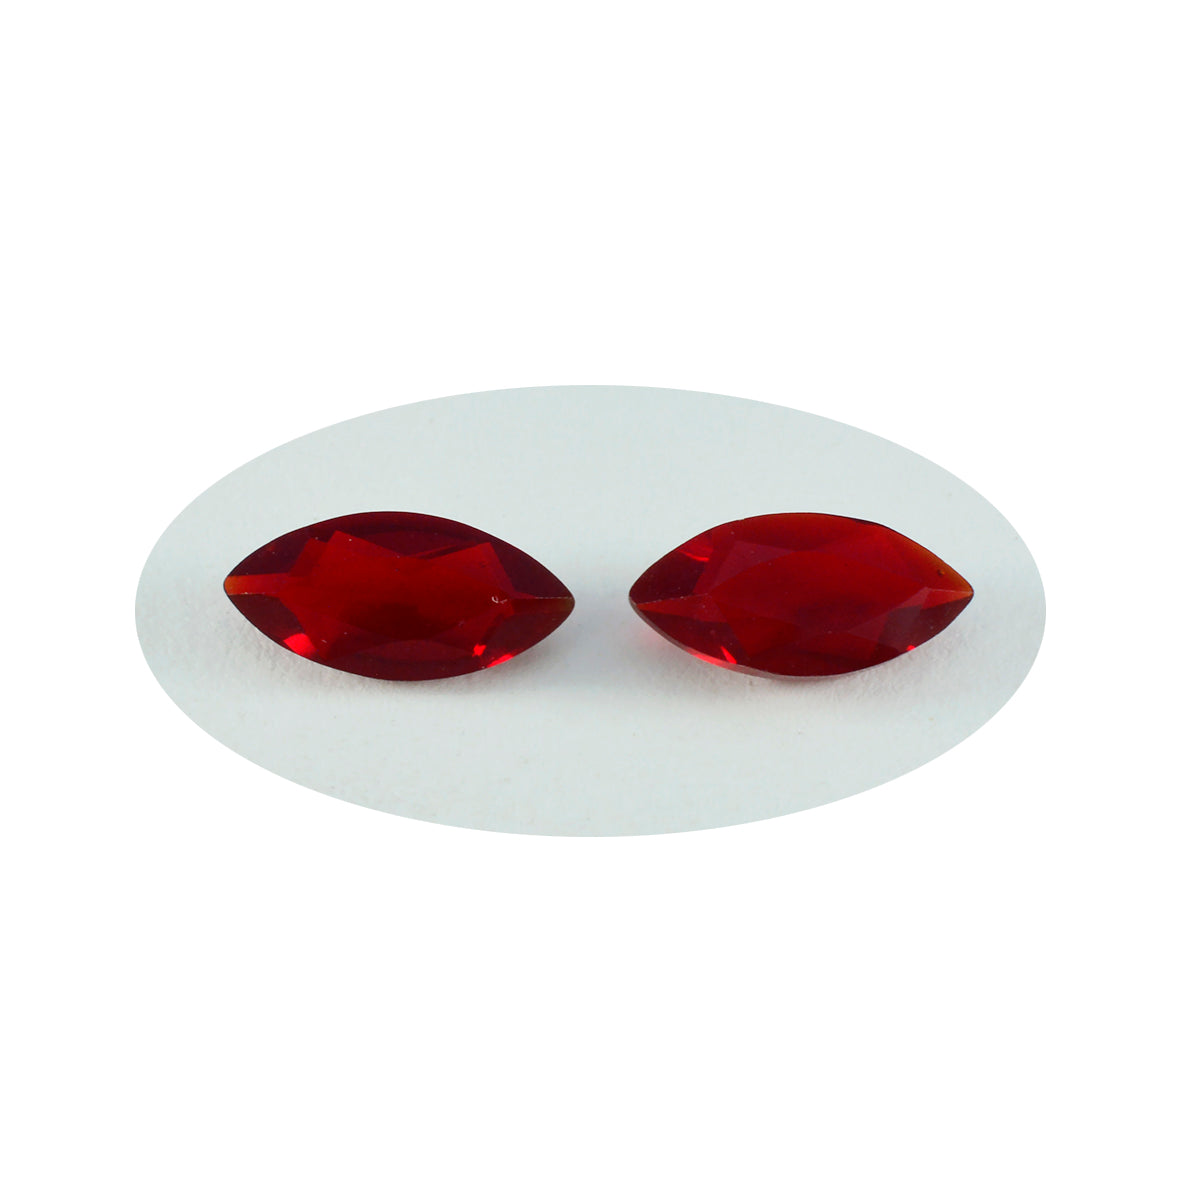 riyogems 1 шт. красный рубин cz ограненный 9x18 мм форма маркиза красивое качество свободный драгоценный камень